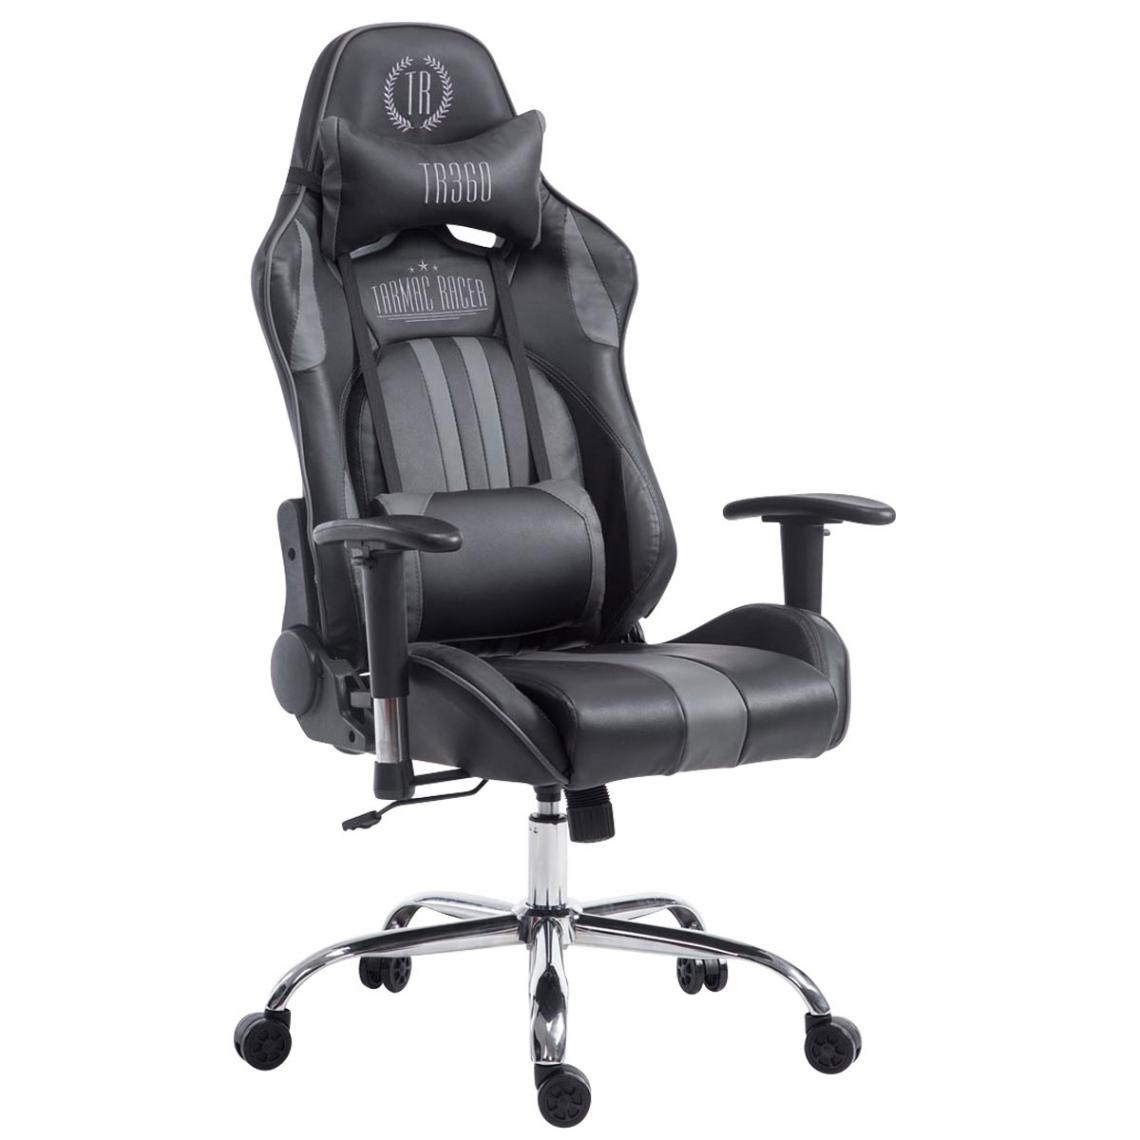 Icaverne - Magnifique Chaise de bureau Luanda Limit V2 cuir synthétique sans repose-pieds couleur gris-noir - Chaises